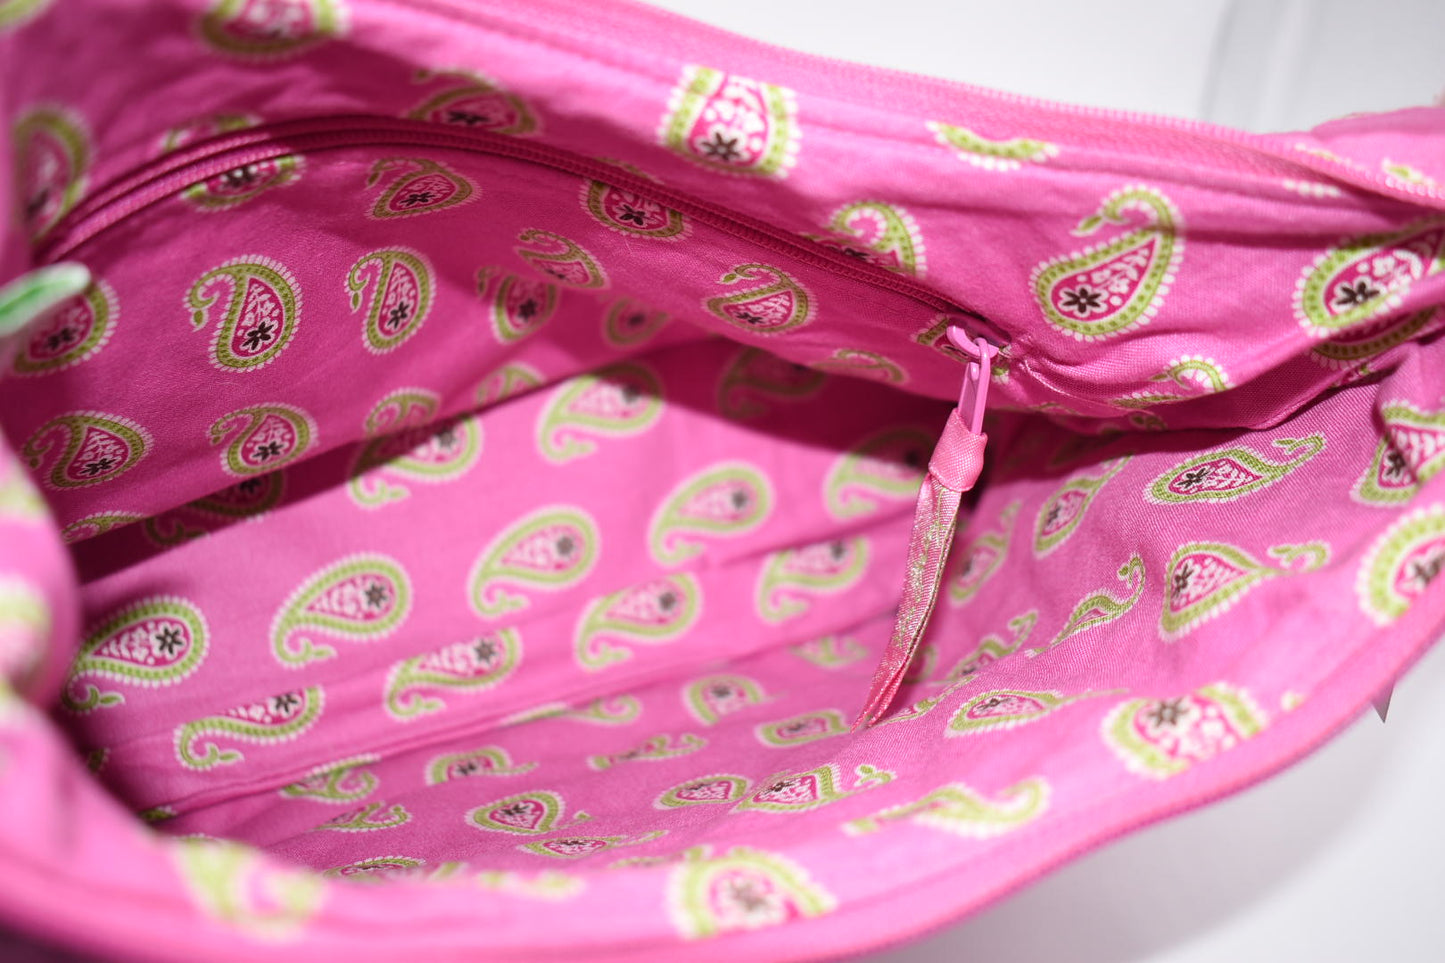 Vera Bradley Shoulder Bag in "Bermuda Pink" Pattern